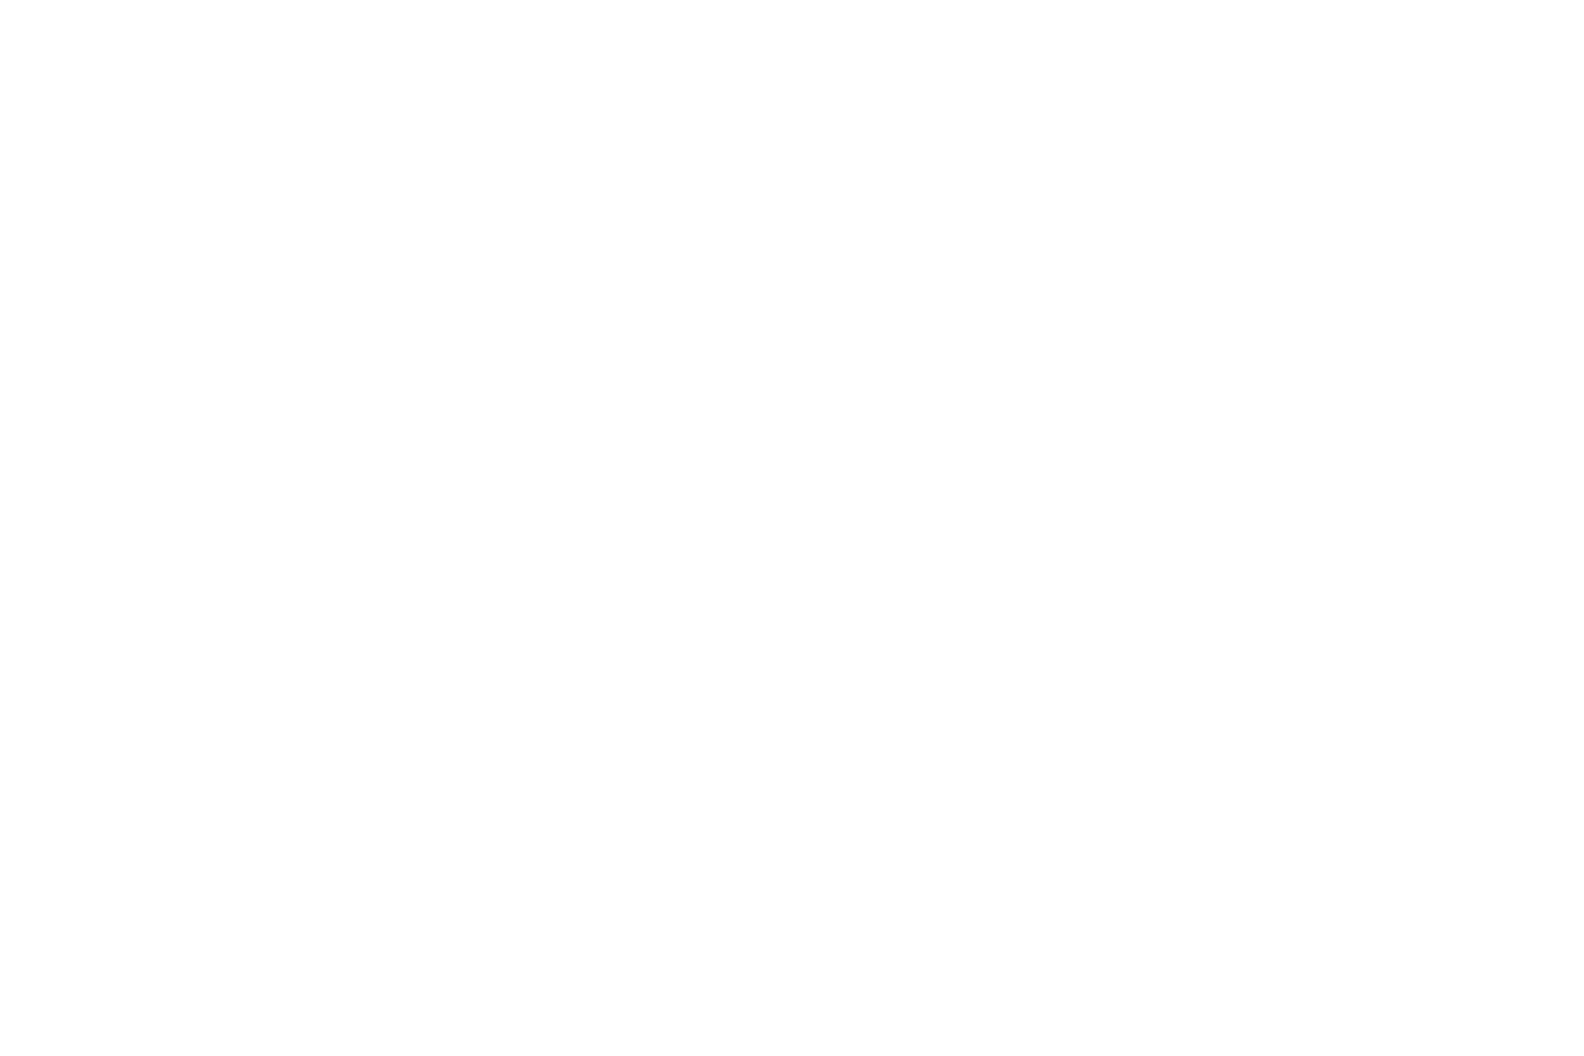 Lambda Produncts Show 2016 -Smart & Beautiful-